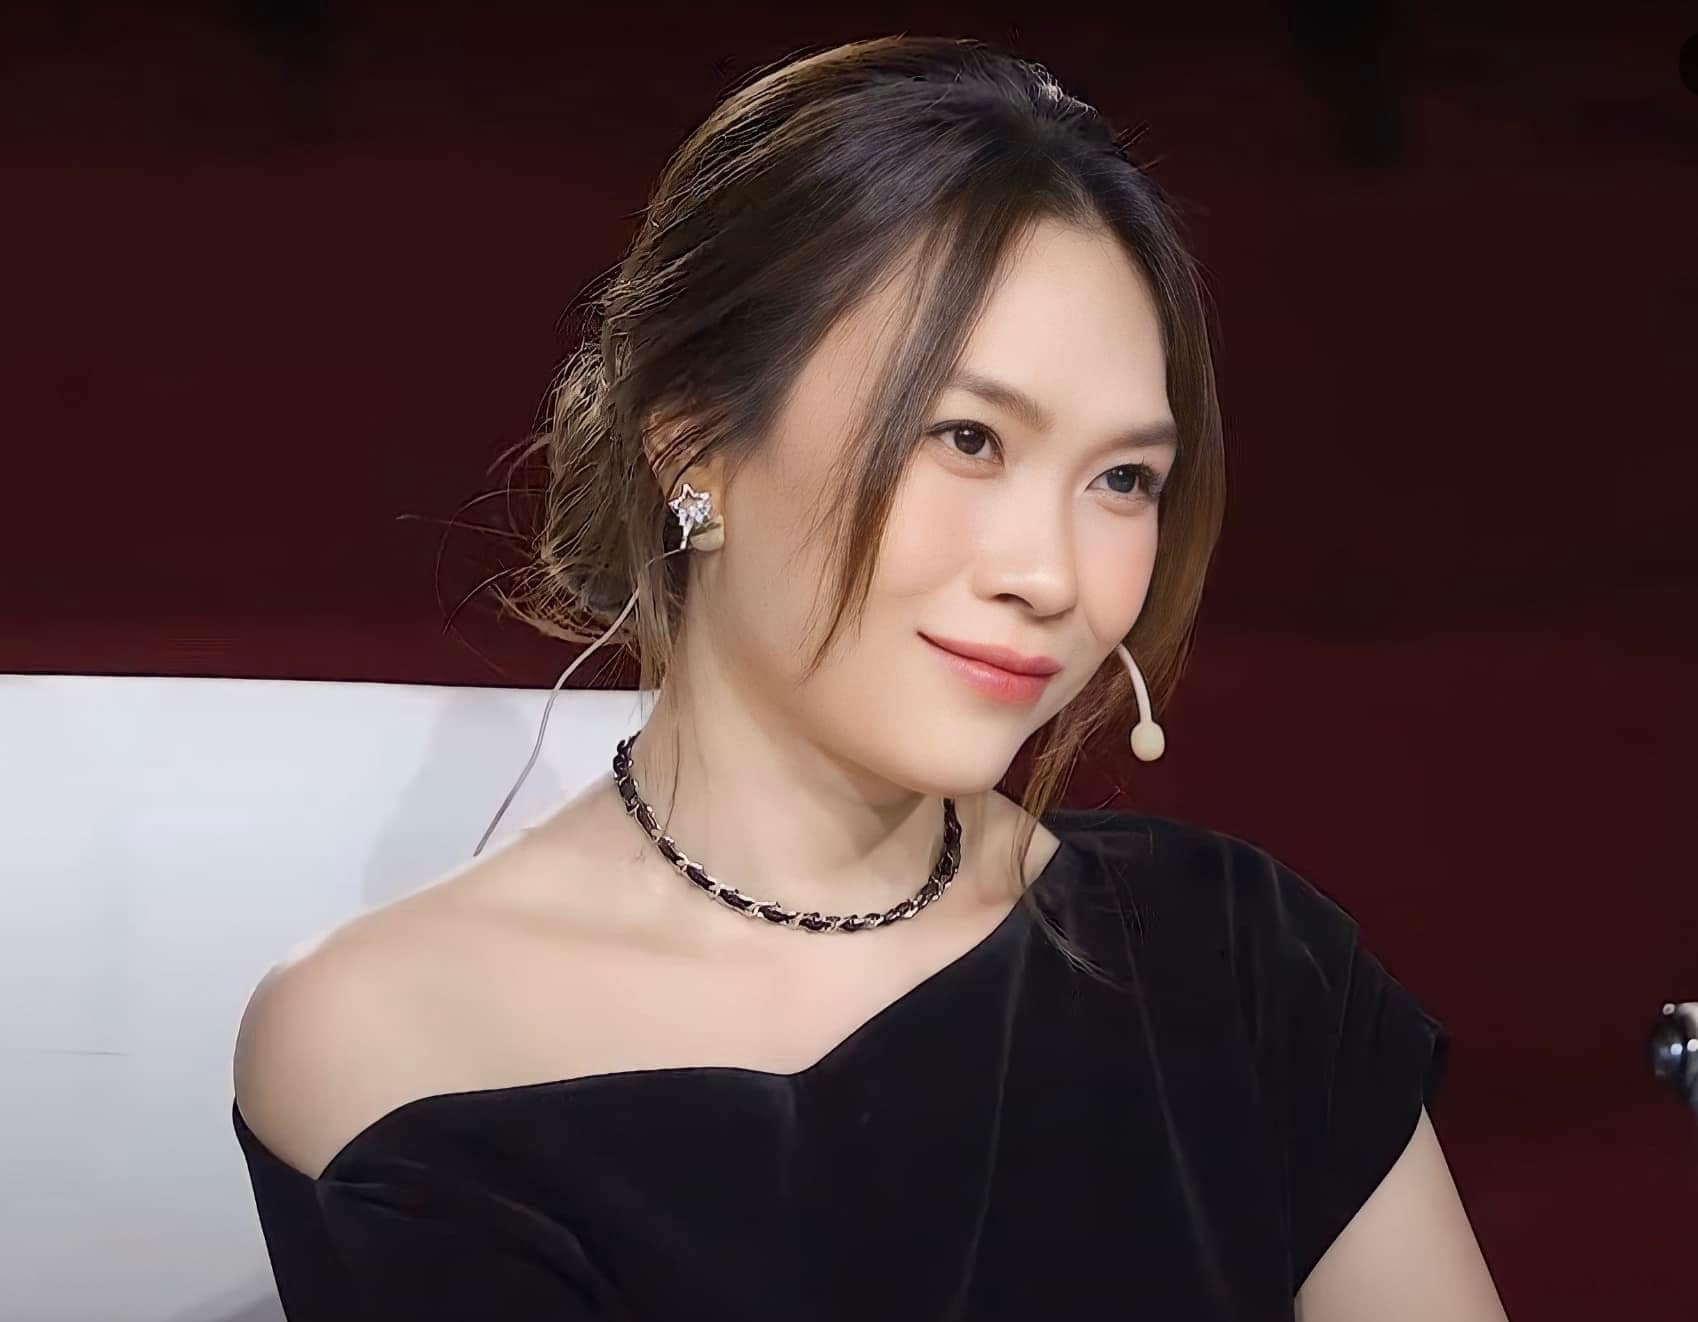 Trang phục và thần thái rạng ngời của nữ ca sĩ trong tập 7 Vietnam Idol (17.8). Ảnh: Fanpage nhân vật